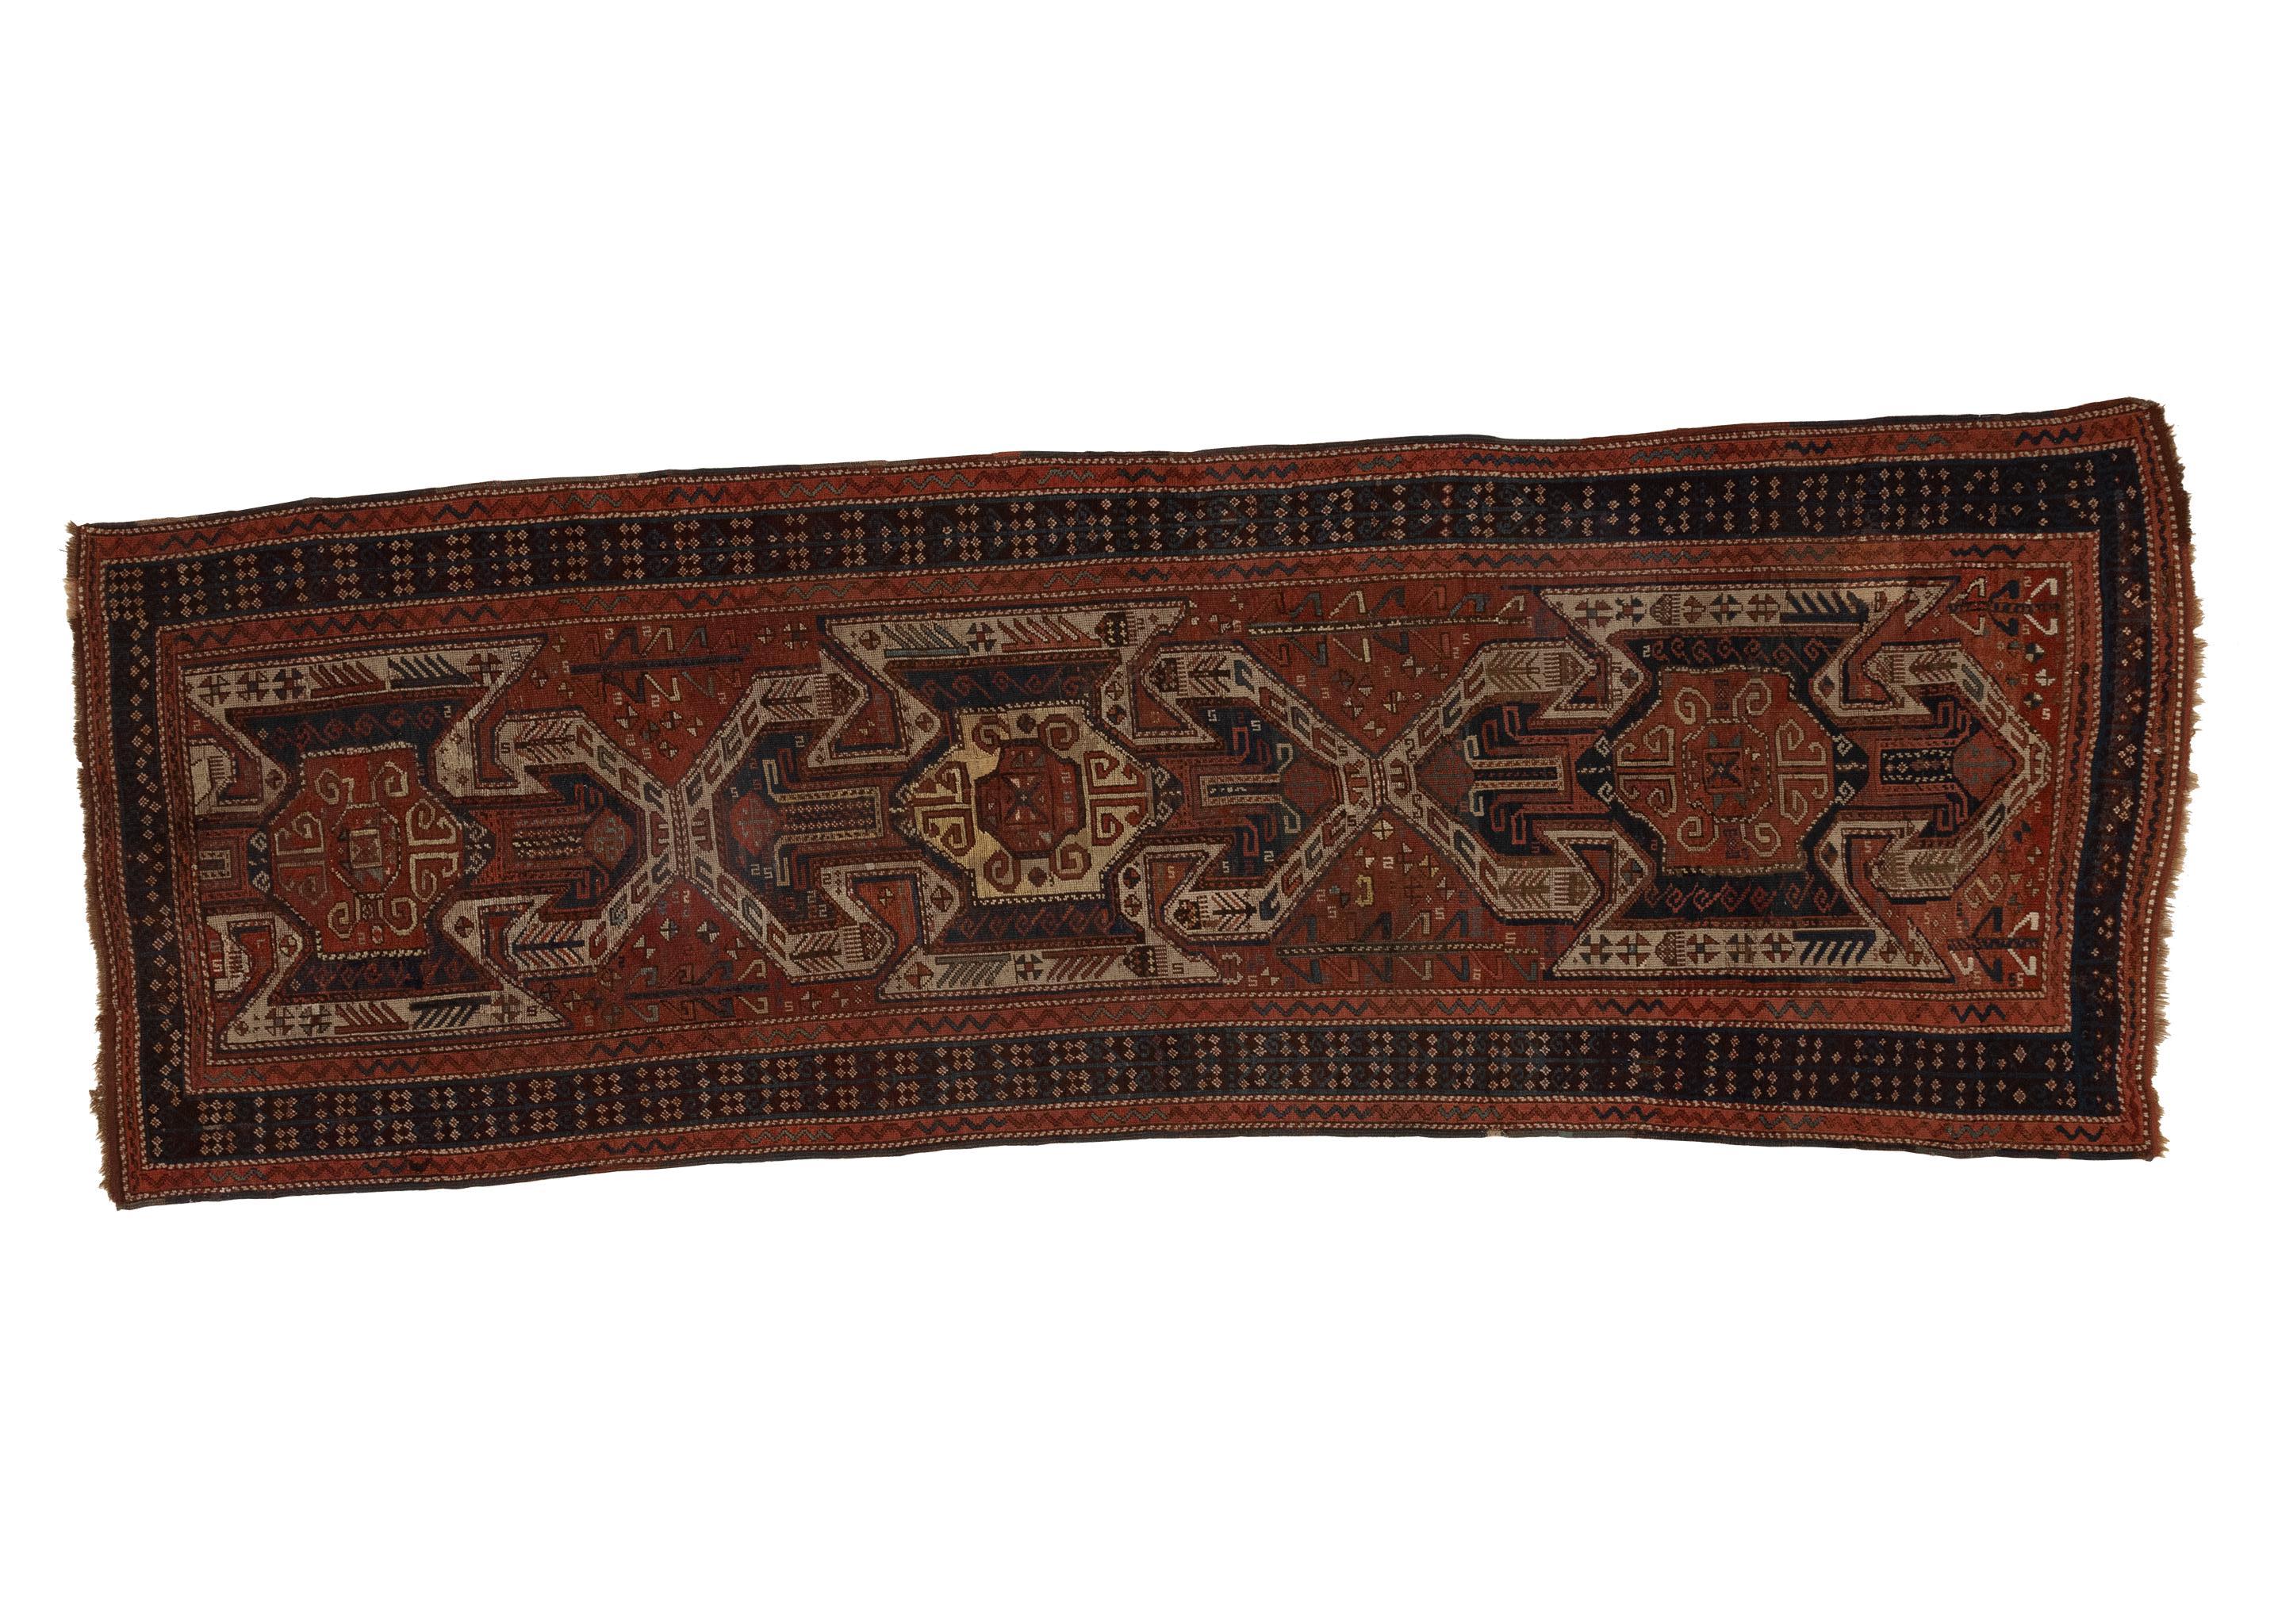 Ce tapis caucasien ancien des années 1880 présente un mélange captivant de teintes orange brûlé et noires, orné d'un motif traditionnel. Mesurant 4 x 12, ce tapis témoigne de l'art et de l'artisanat de la région du Caucase à la fin du XIXe